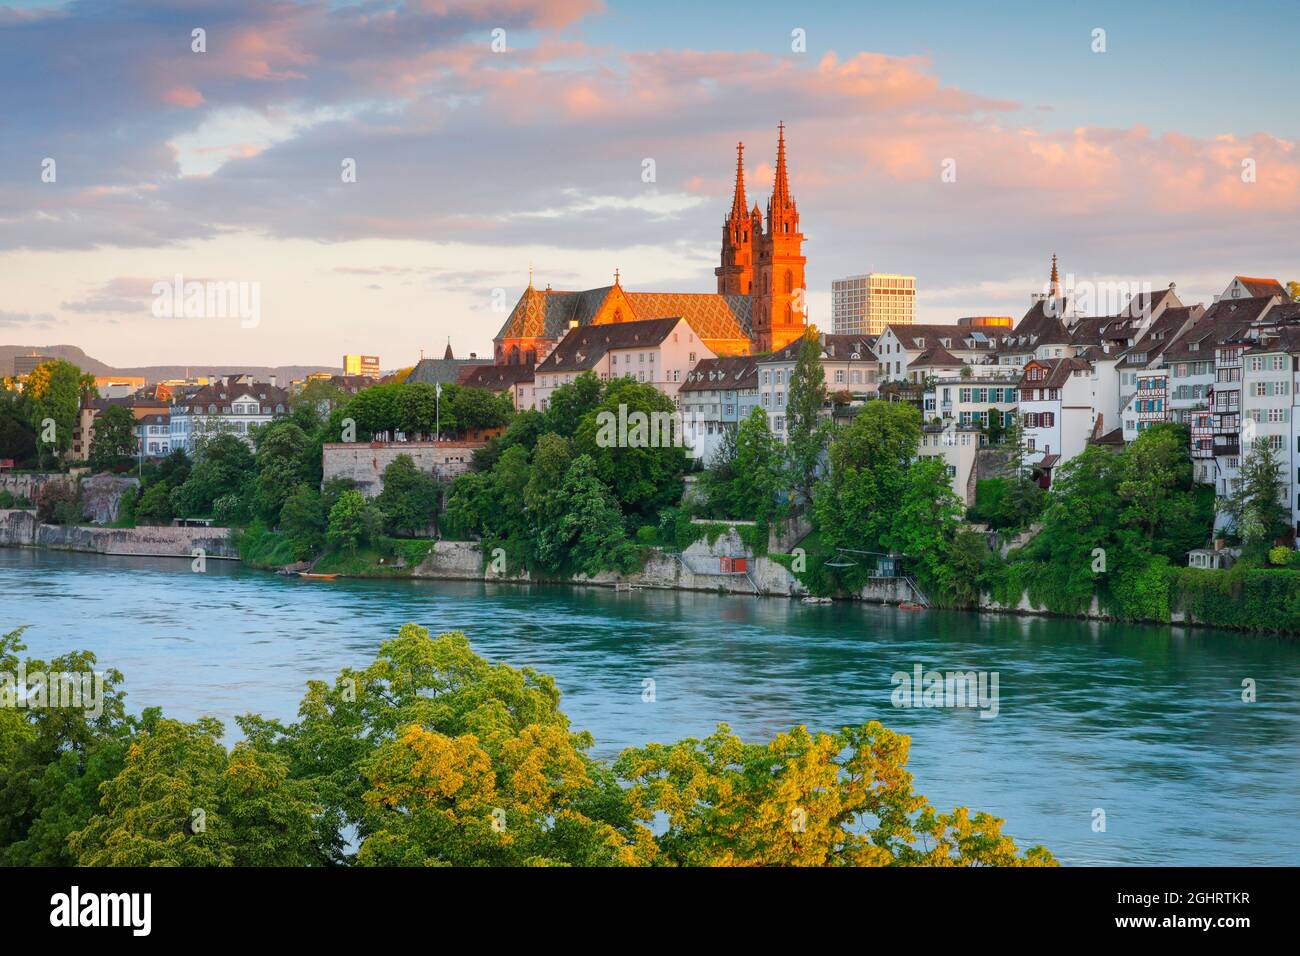 Blick auf den Basler Dom mitten in der Altstadt von Basel mit dem türkisfarbenen Rhein im Vordergrund Stockfoto